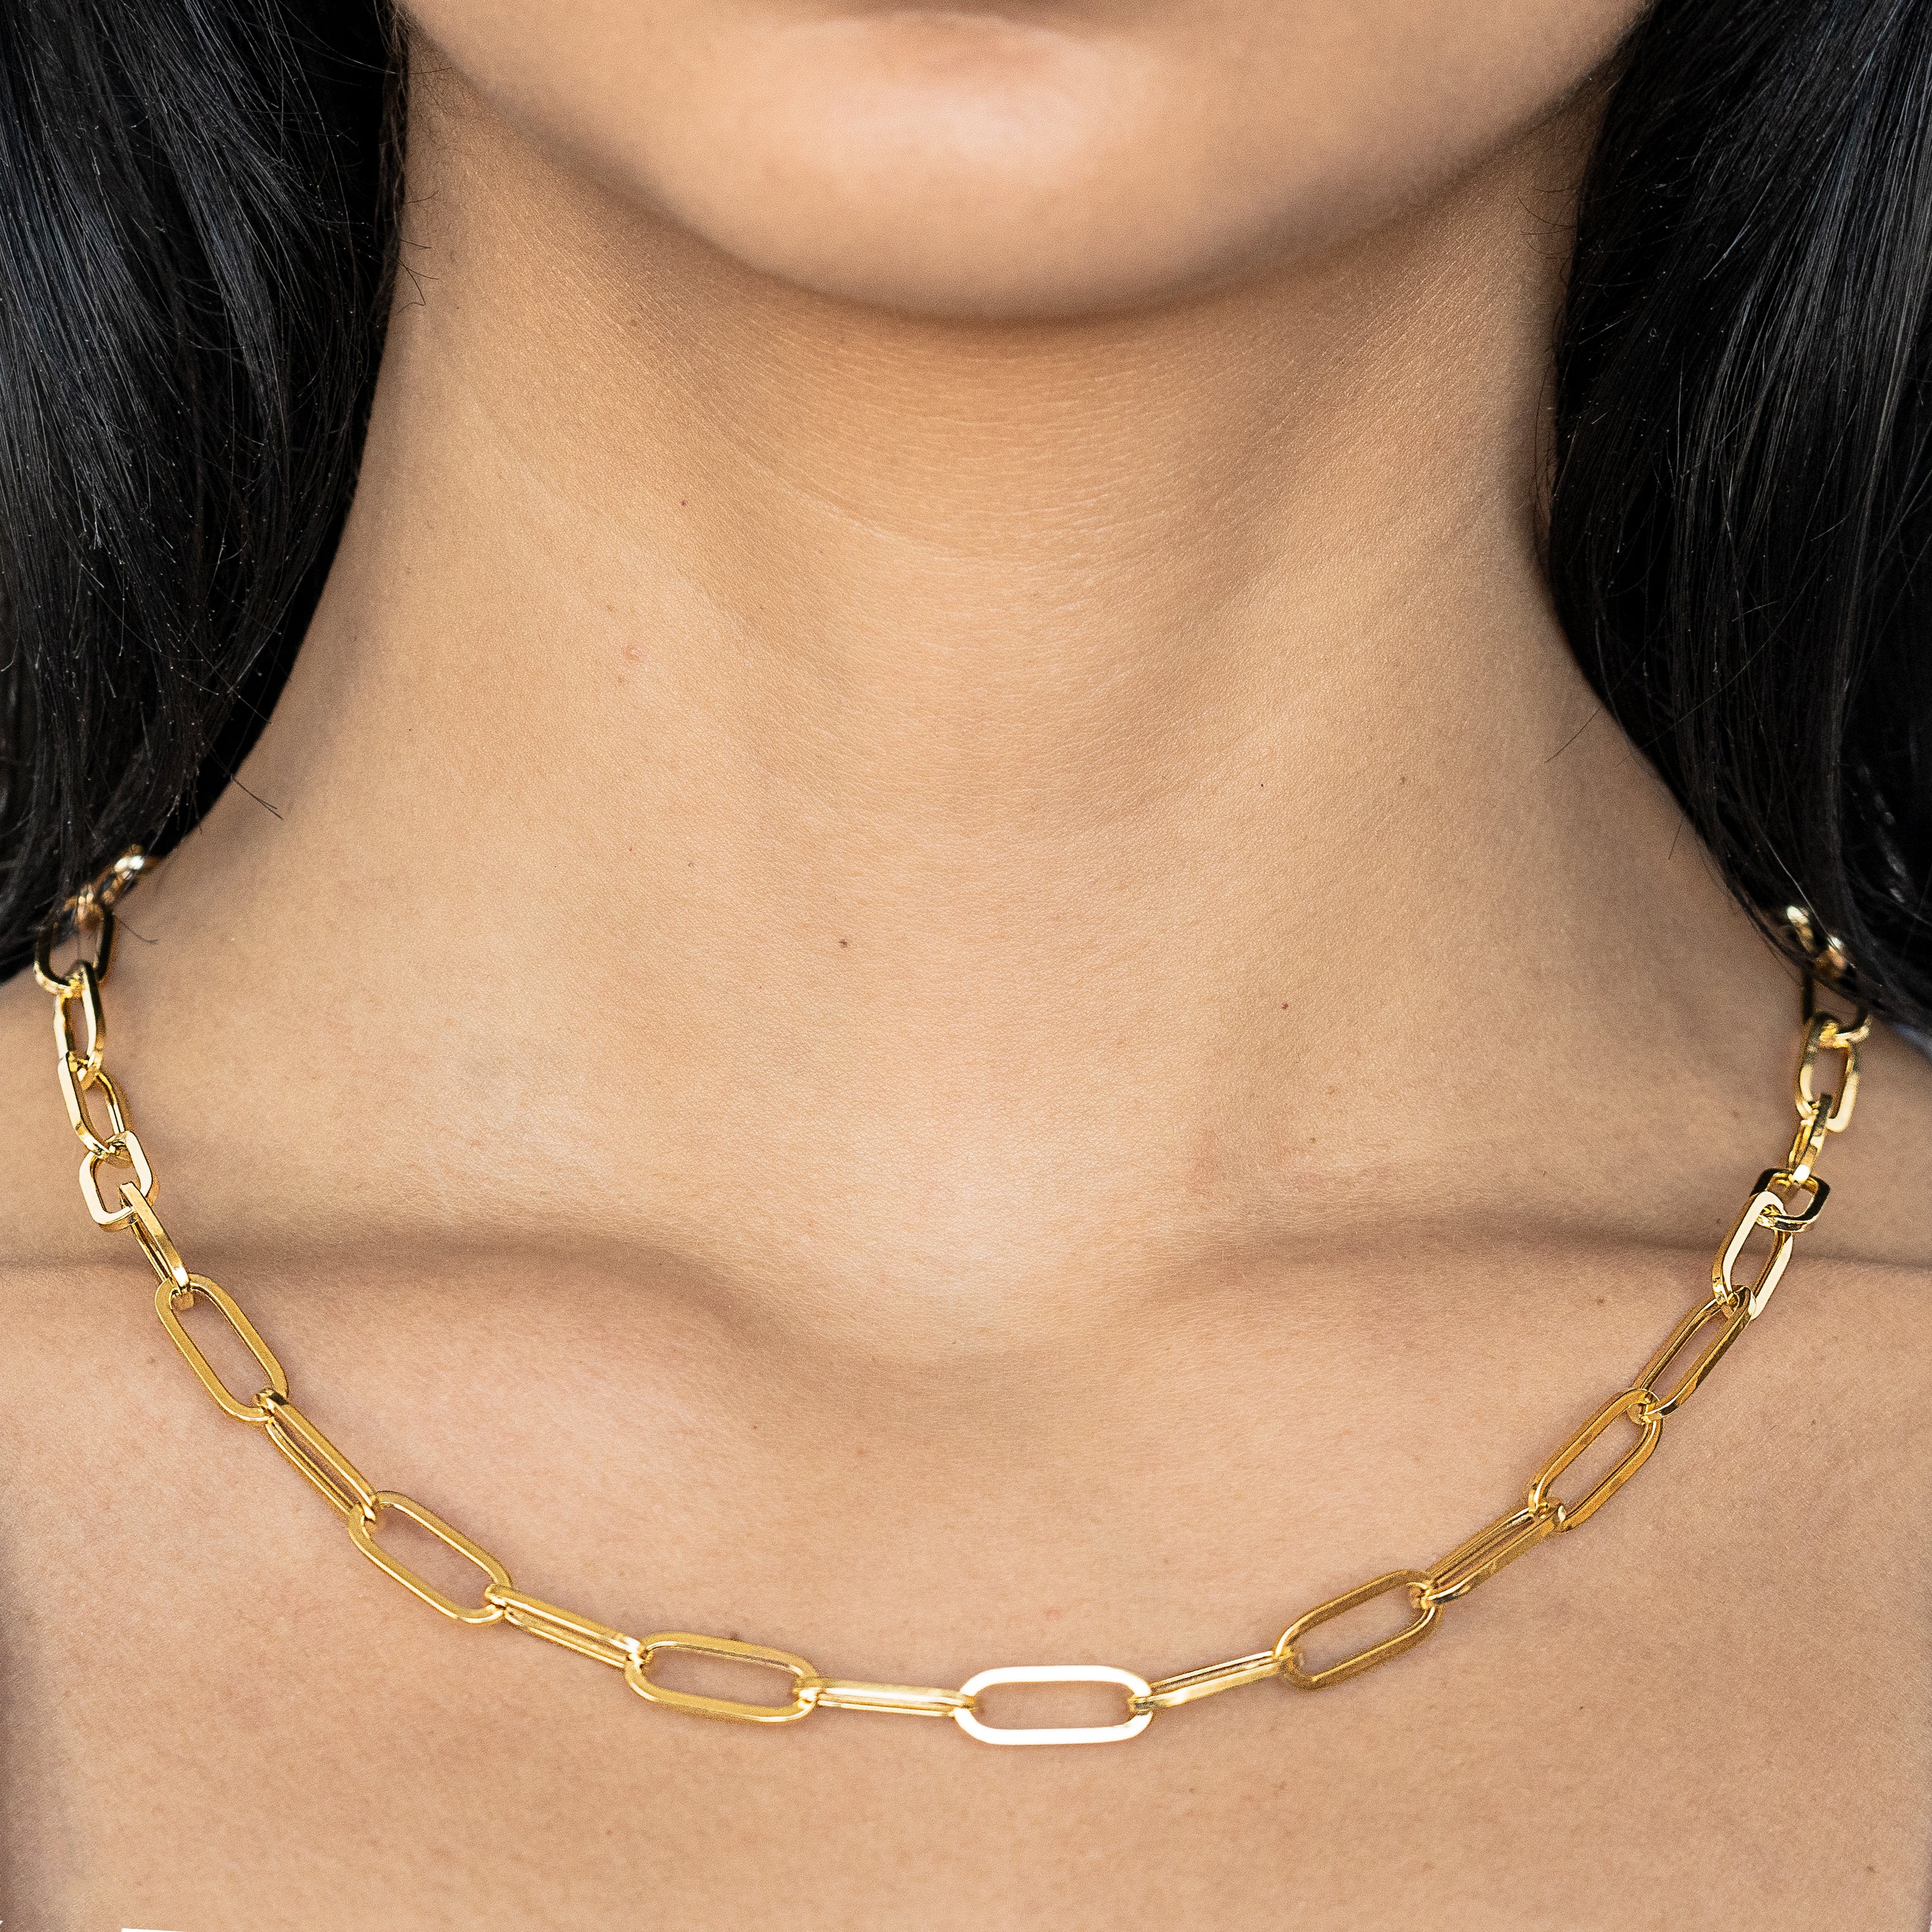 Slide Lock Paper Clip 18" Necklace | eBay